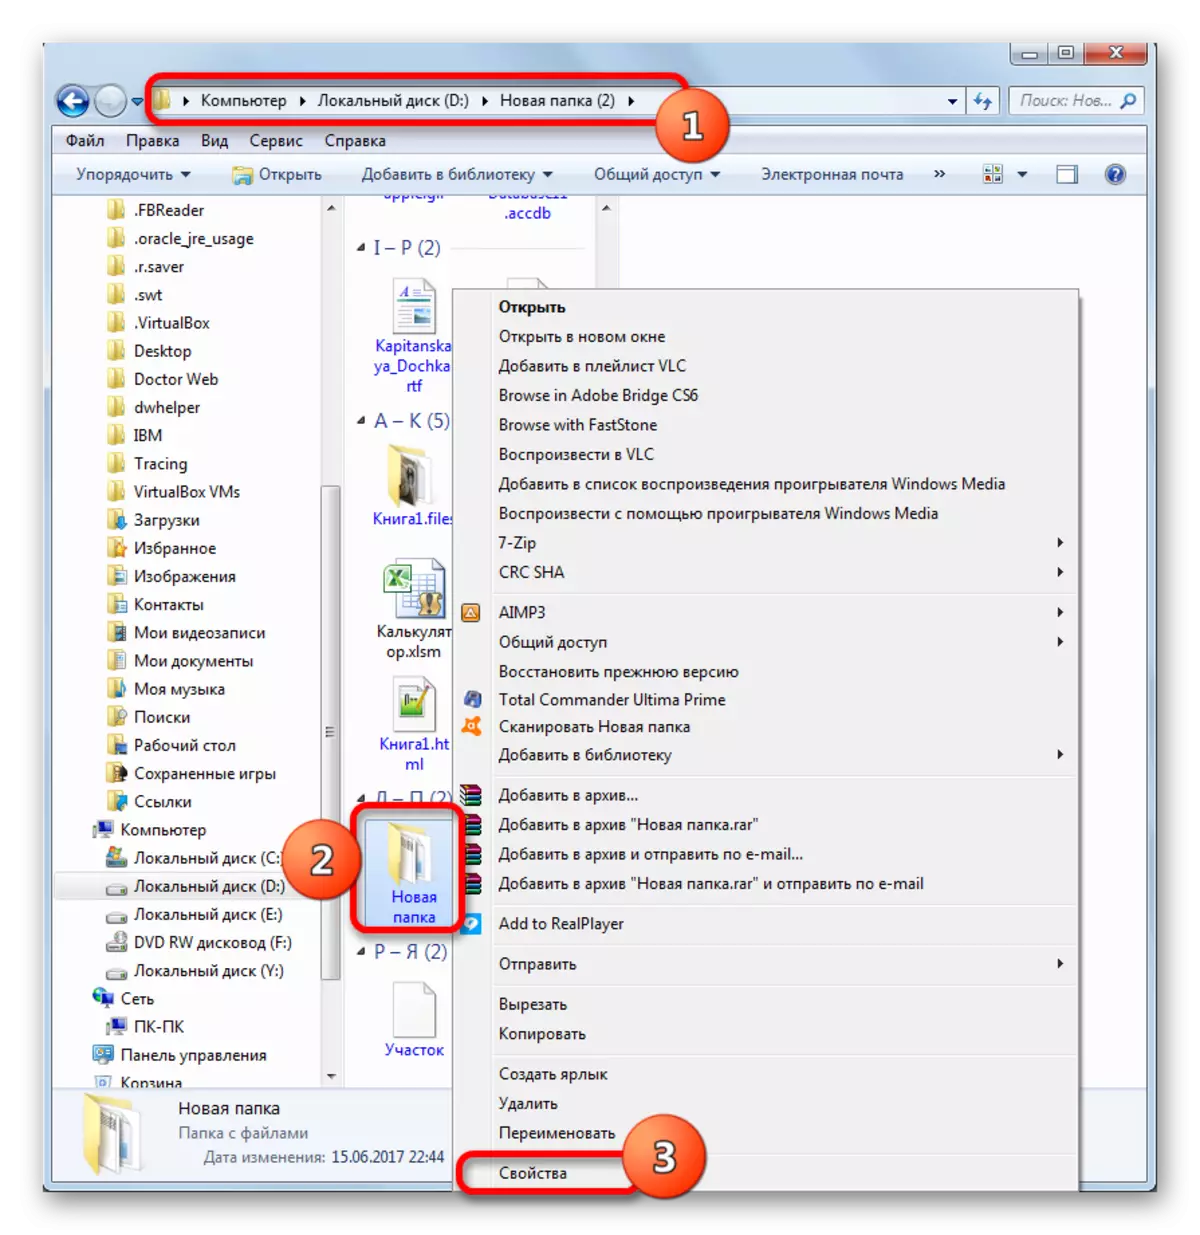 Windows Explorerдин контекст менюсу аркылуу папка касиеттерине которулуу